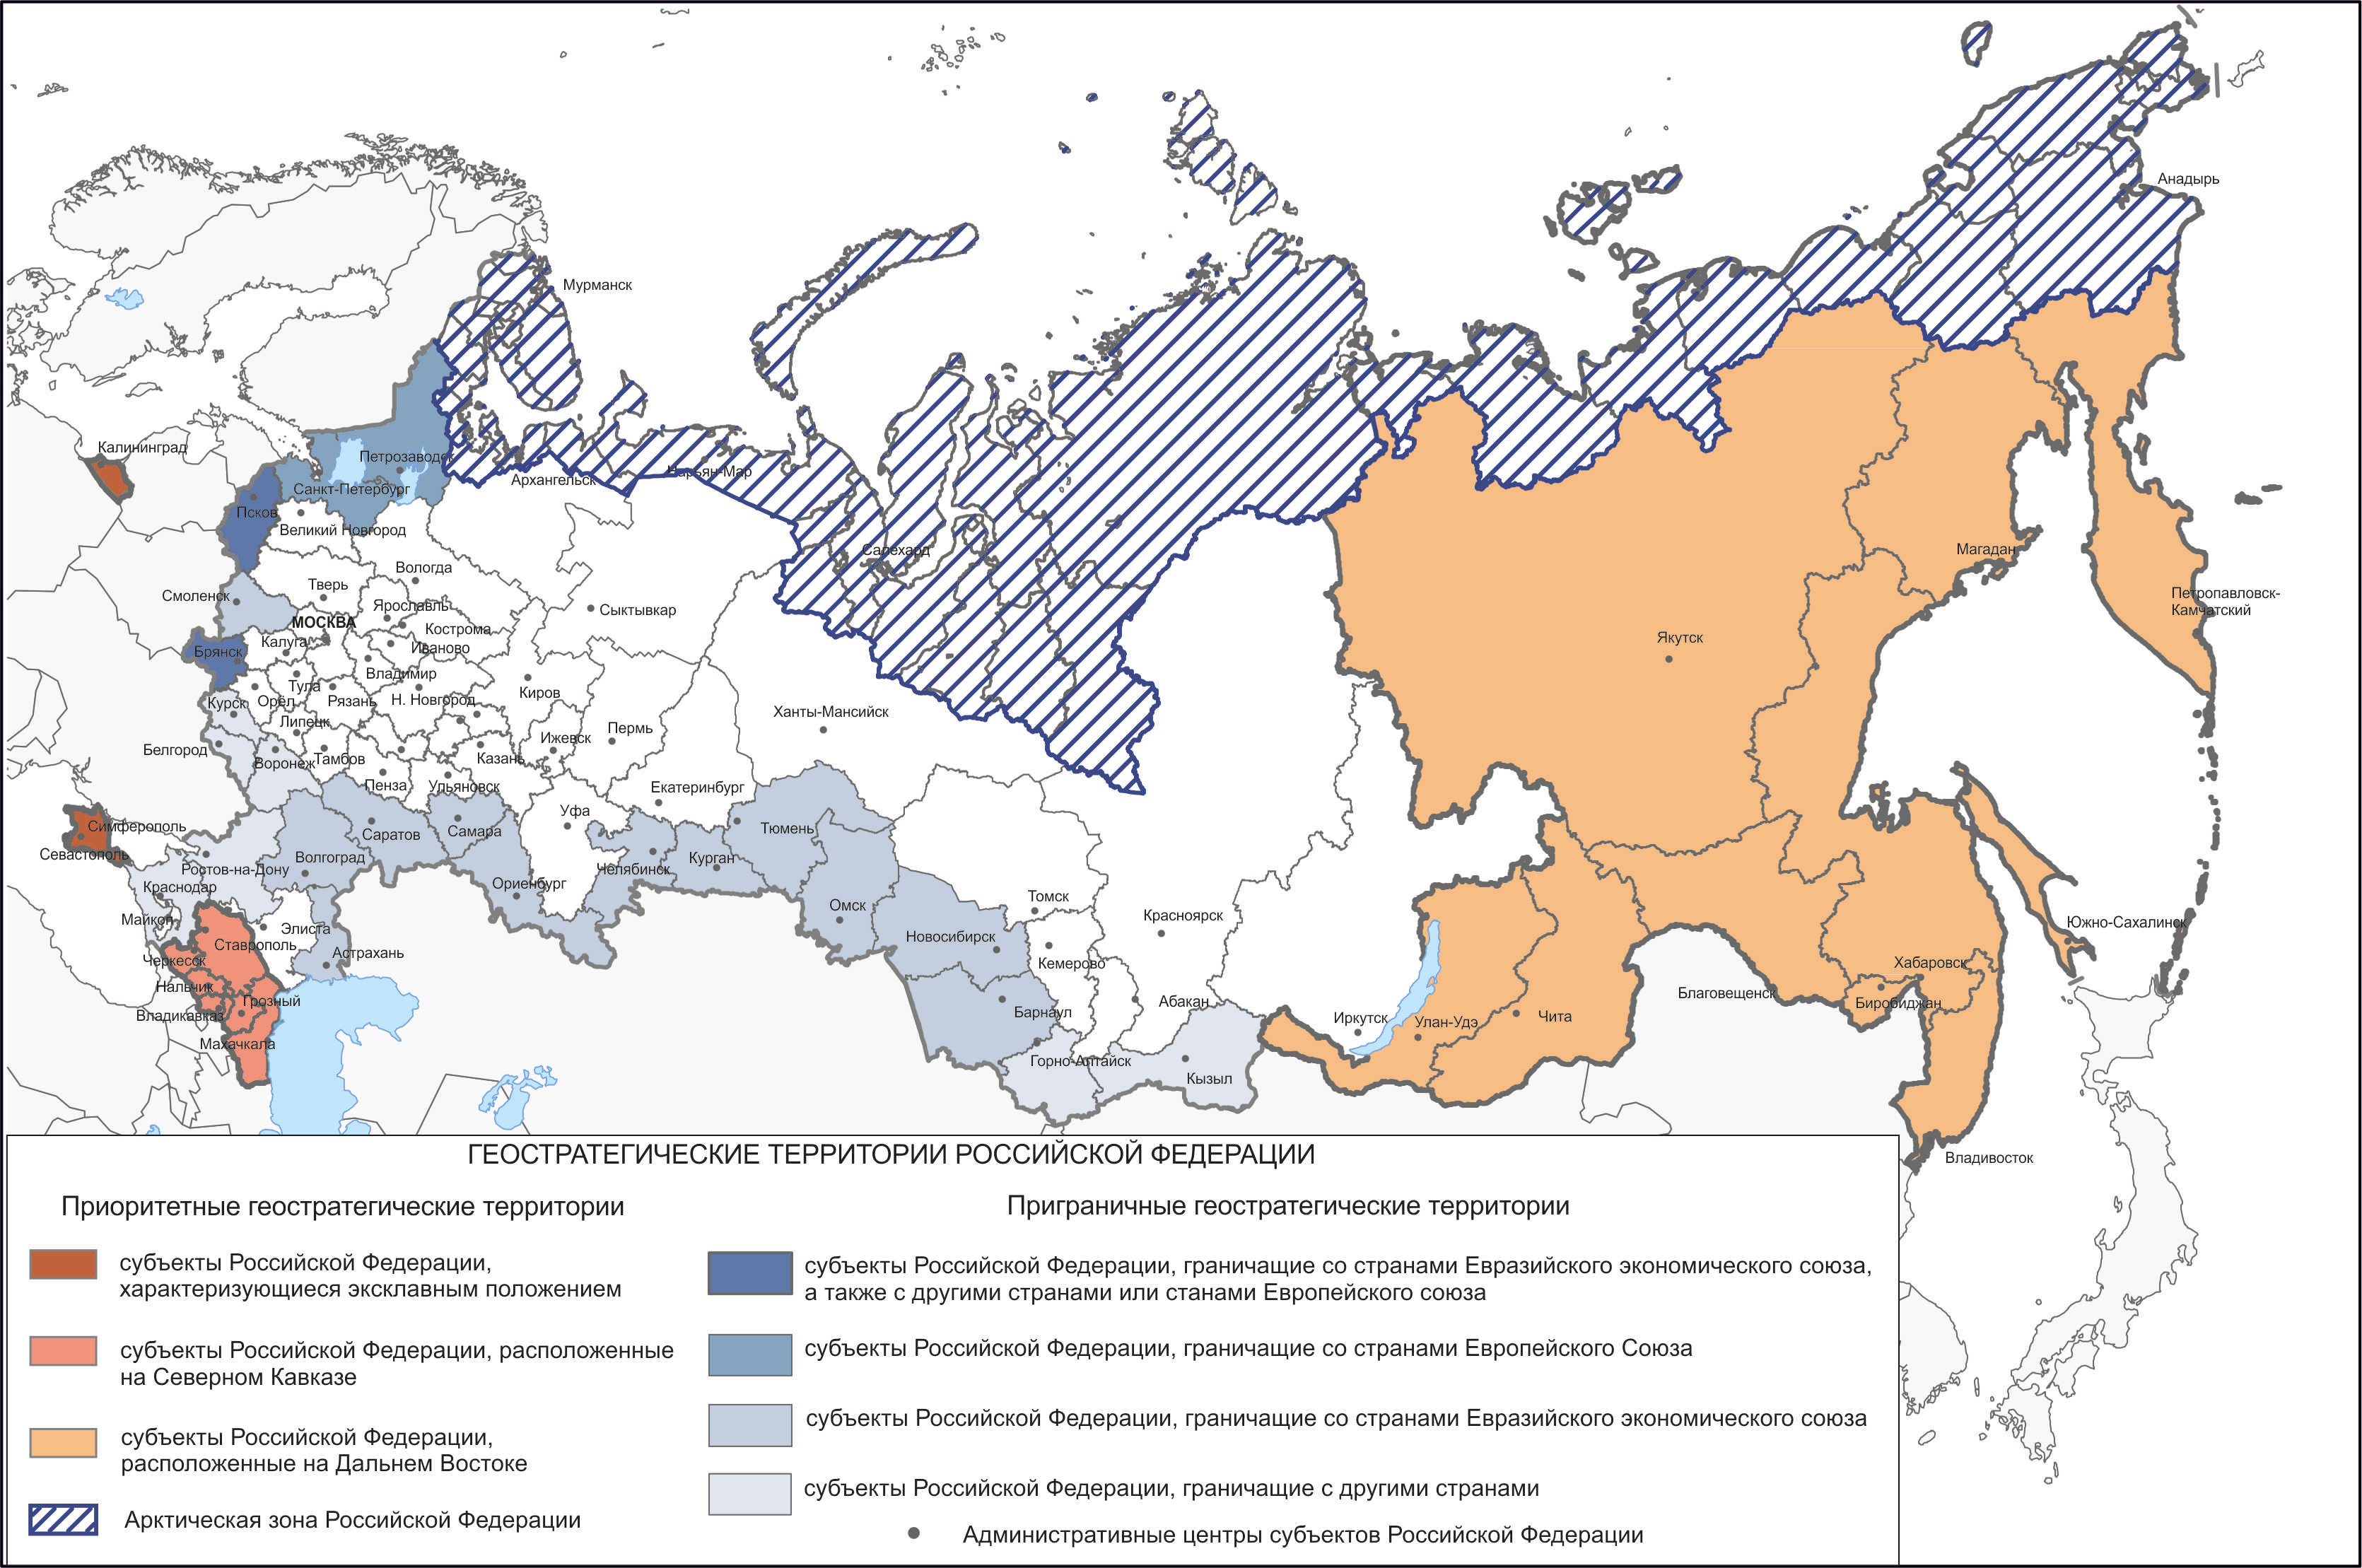 Схема размещения геостратегических территорий Российской Федерации